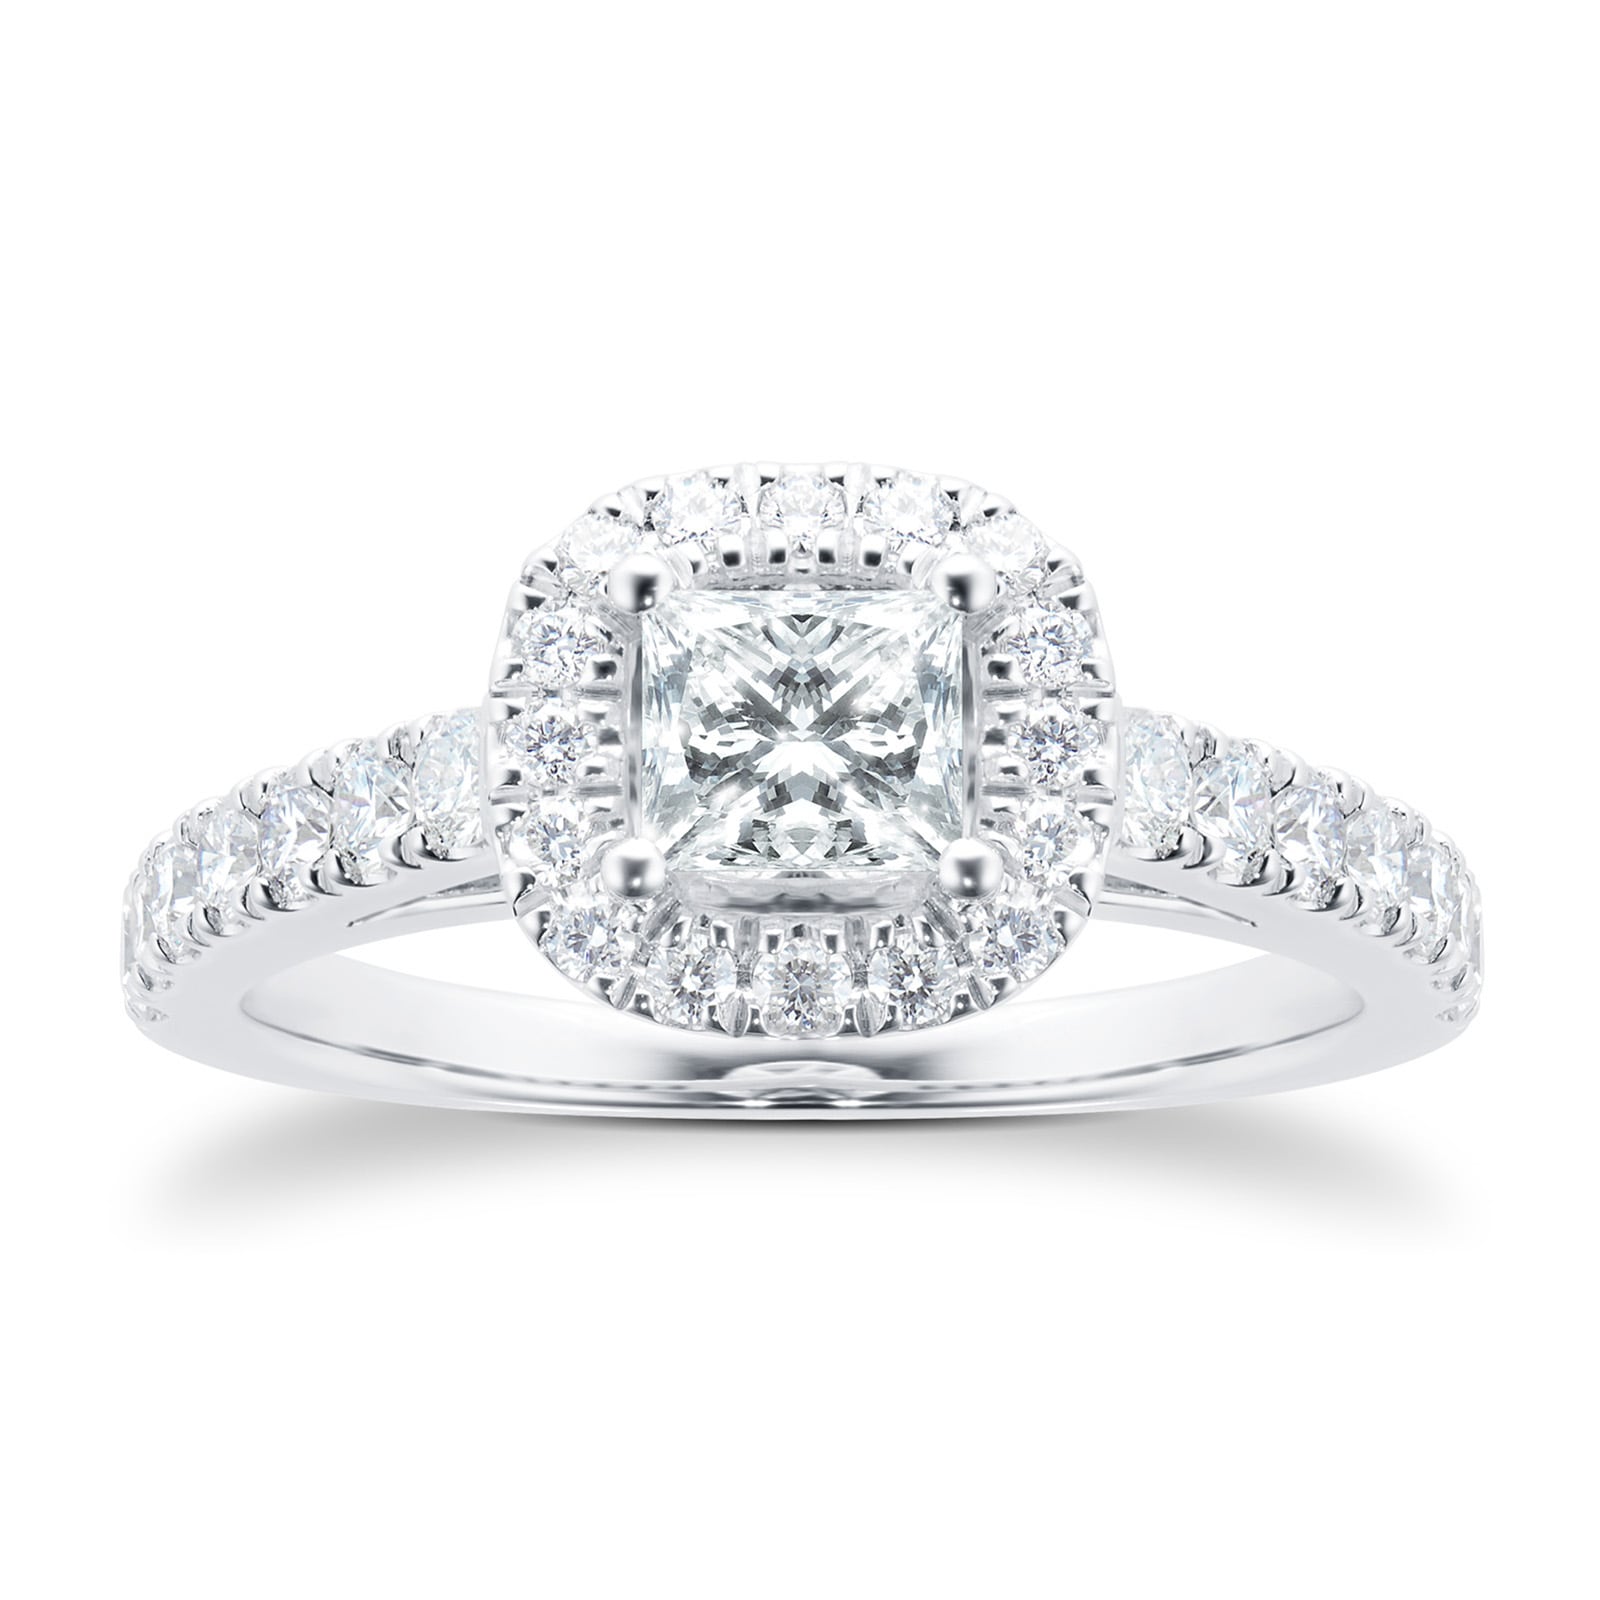 18ct White Gold Princess Cut 1.00 Carat 88 Facet Diamond Ring - Ring Size L